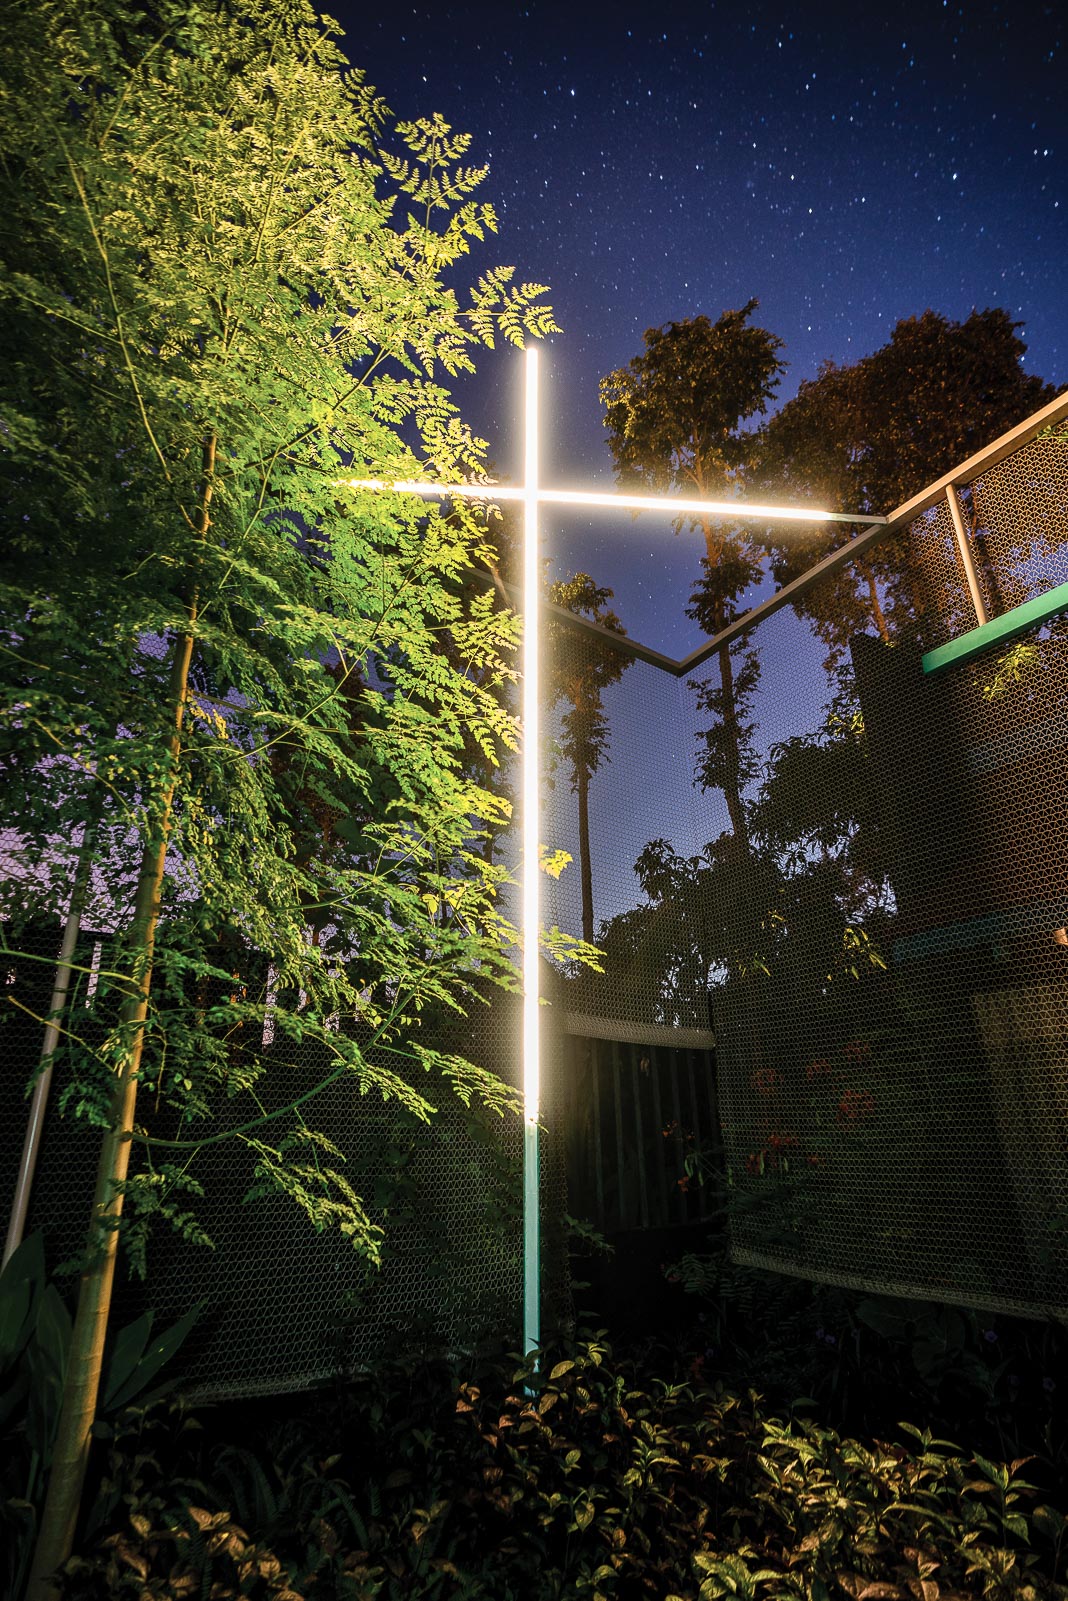 Khung cảnh hồ bơi và sân vườn vào buổi tối, ánh sáng hình cây thập tự tạo nên cảm xúc đặc biệt ấn tượng 2